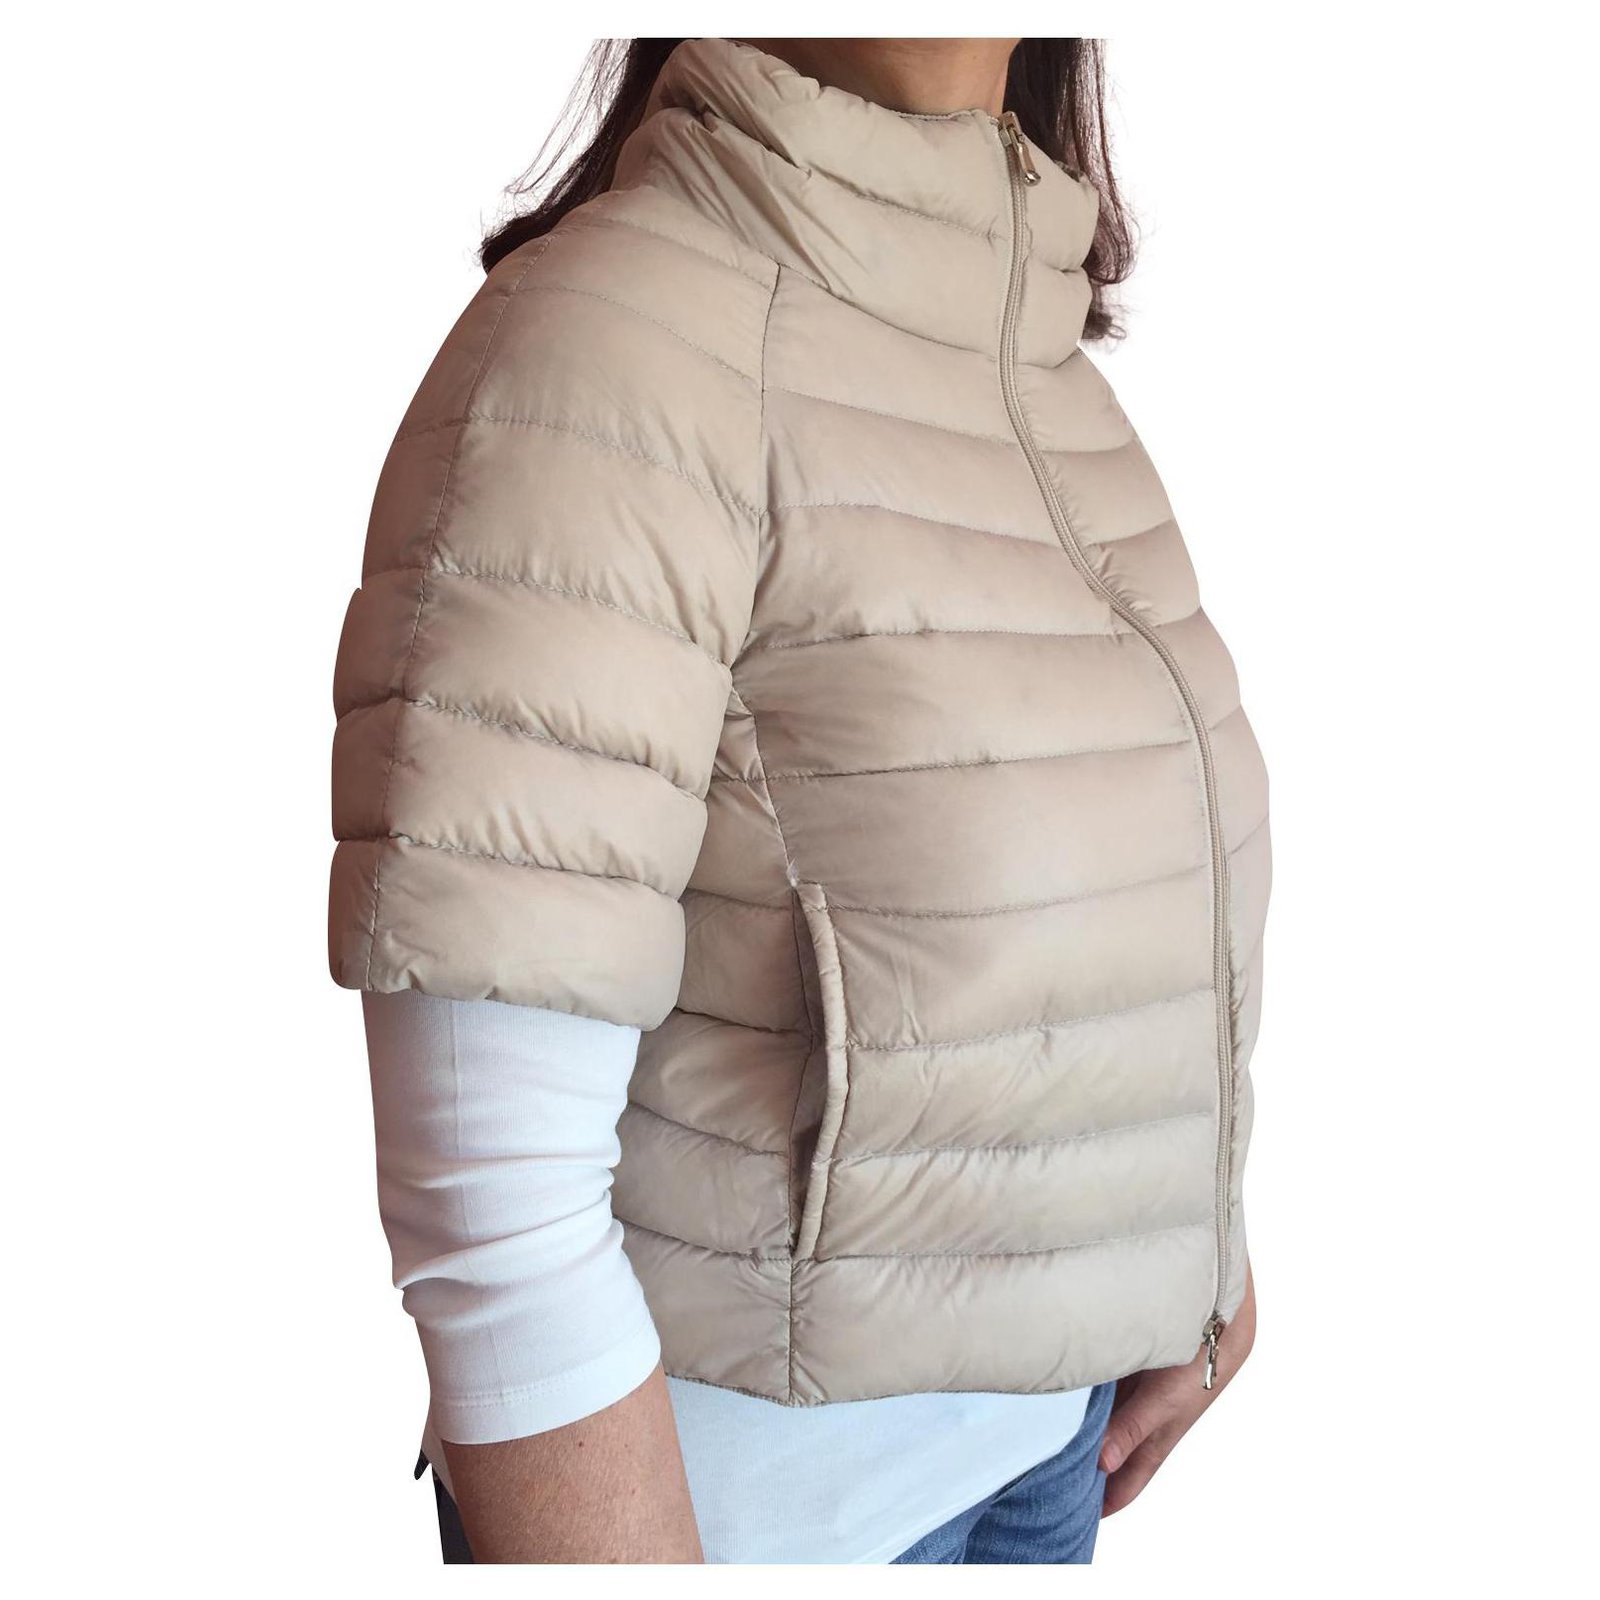 women's short sleeve puffer jacket